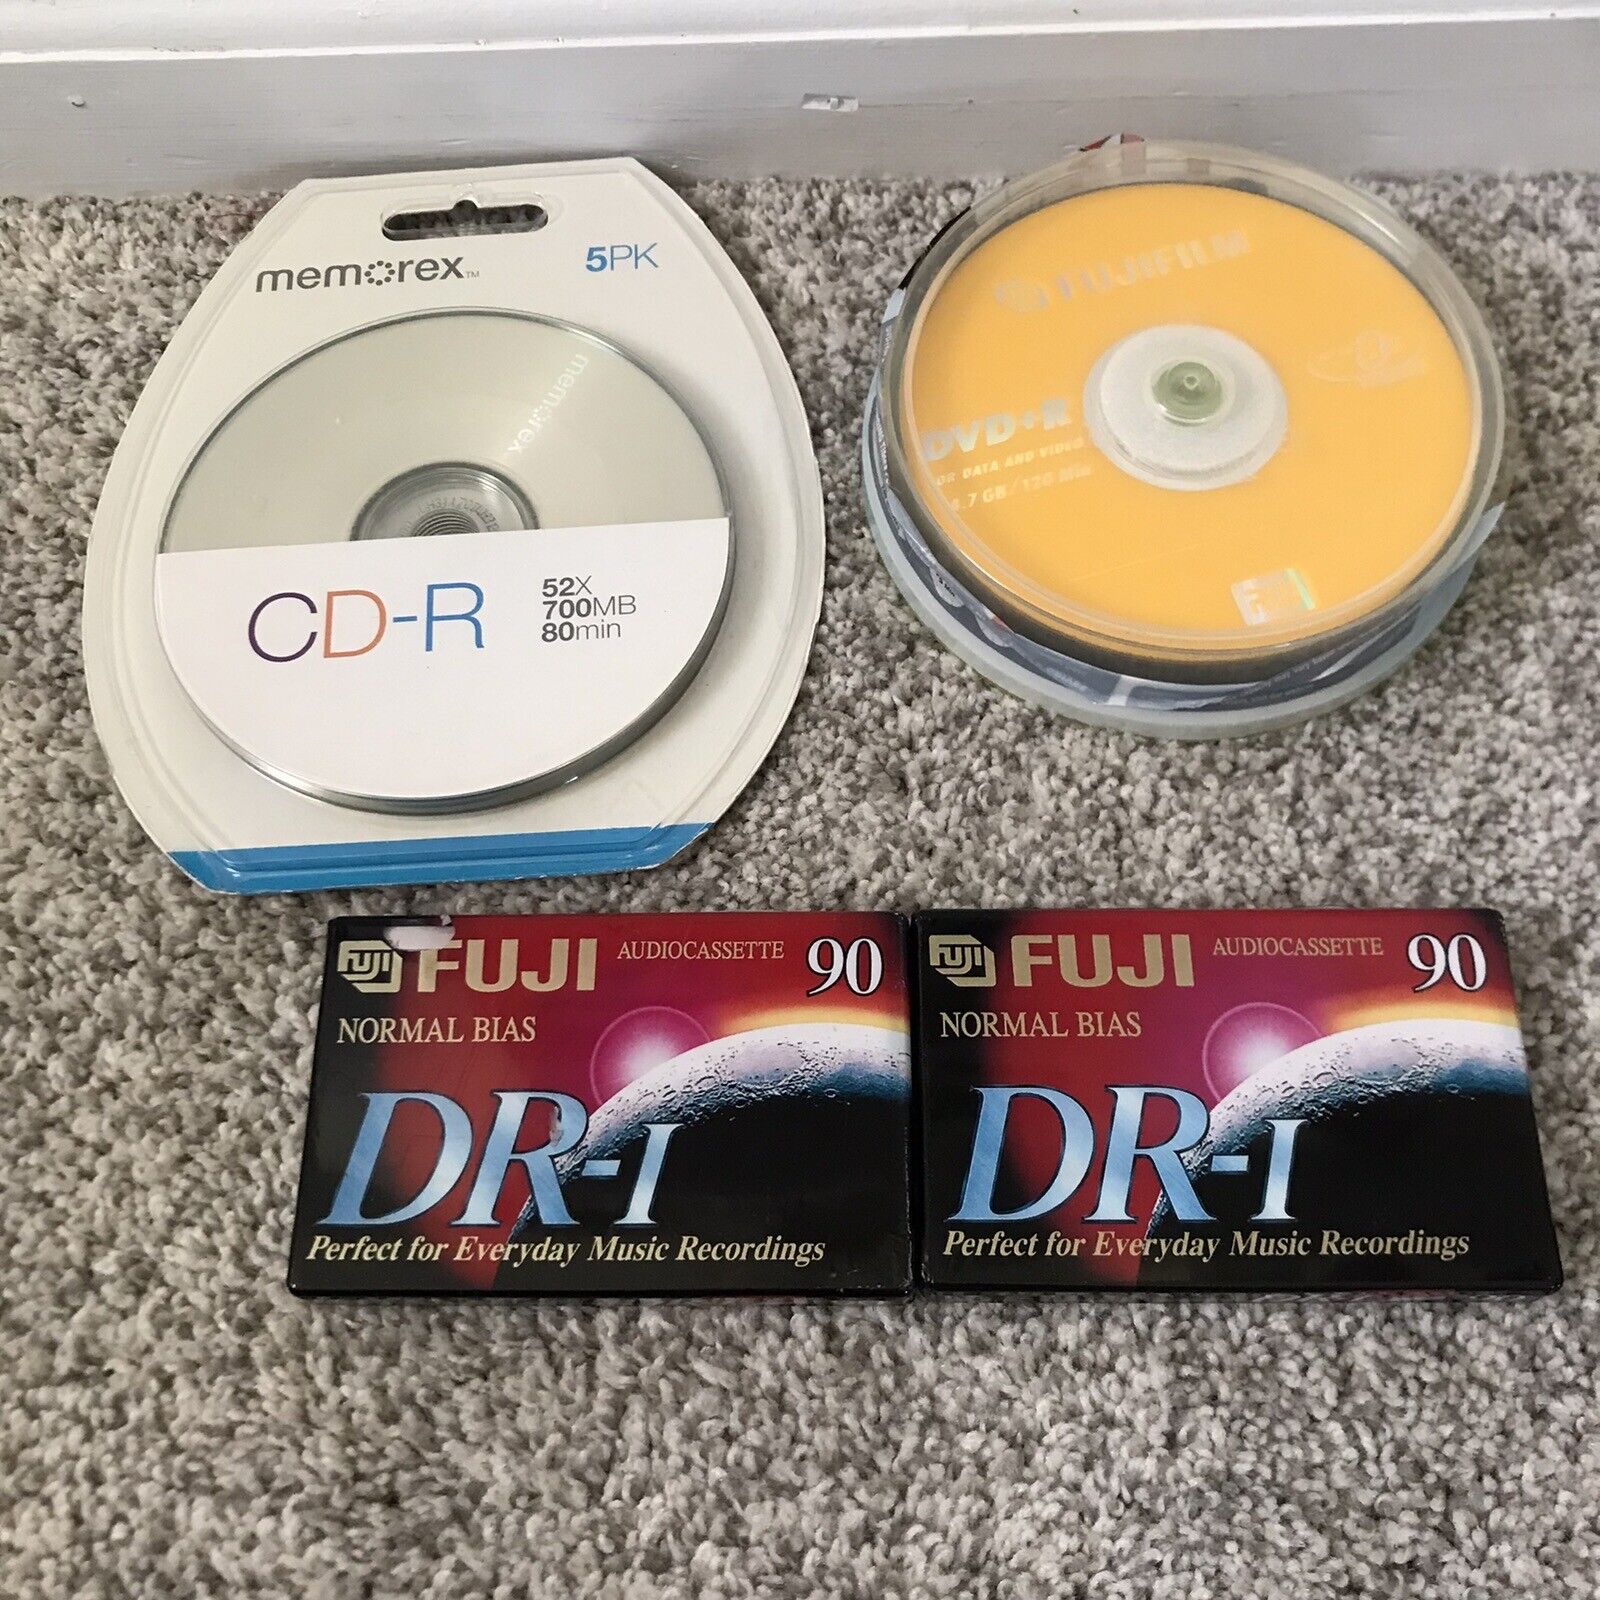 Lot Of Vtg Blank Media Cassette Fujifilm DVD+r  Memorex Cd-r New In Package